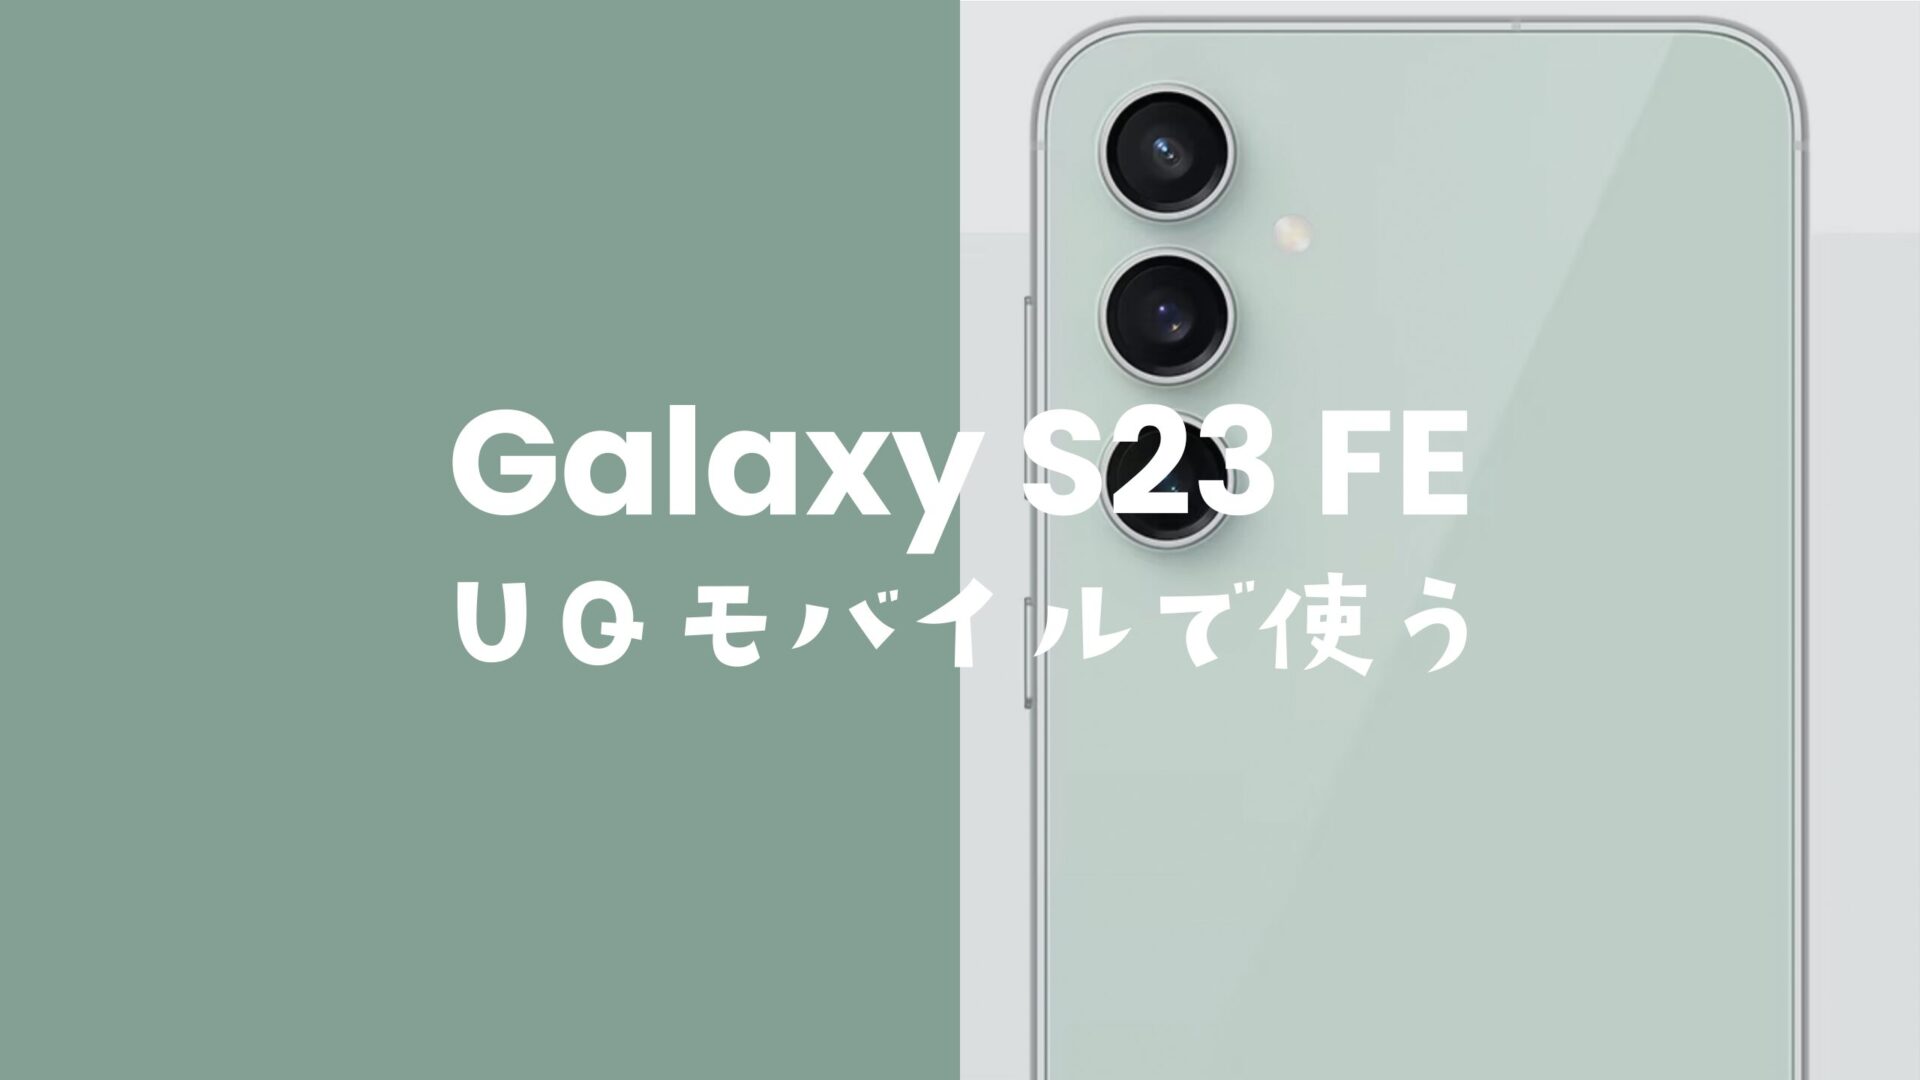 Galaxy(ギャラクシー) S23 FEはUQモバイルでも使える？セット購入はできる？のサムネイル画像